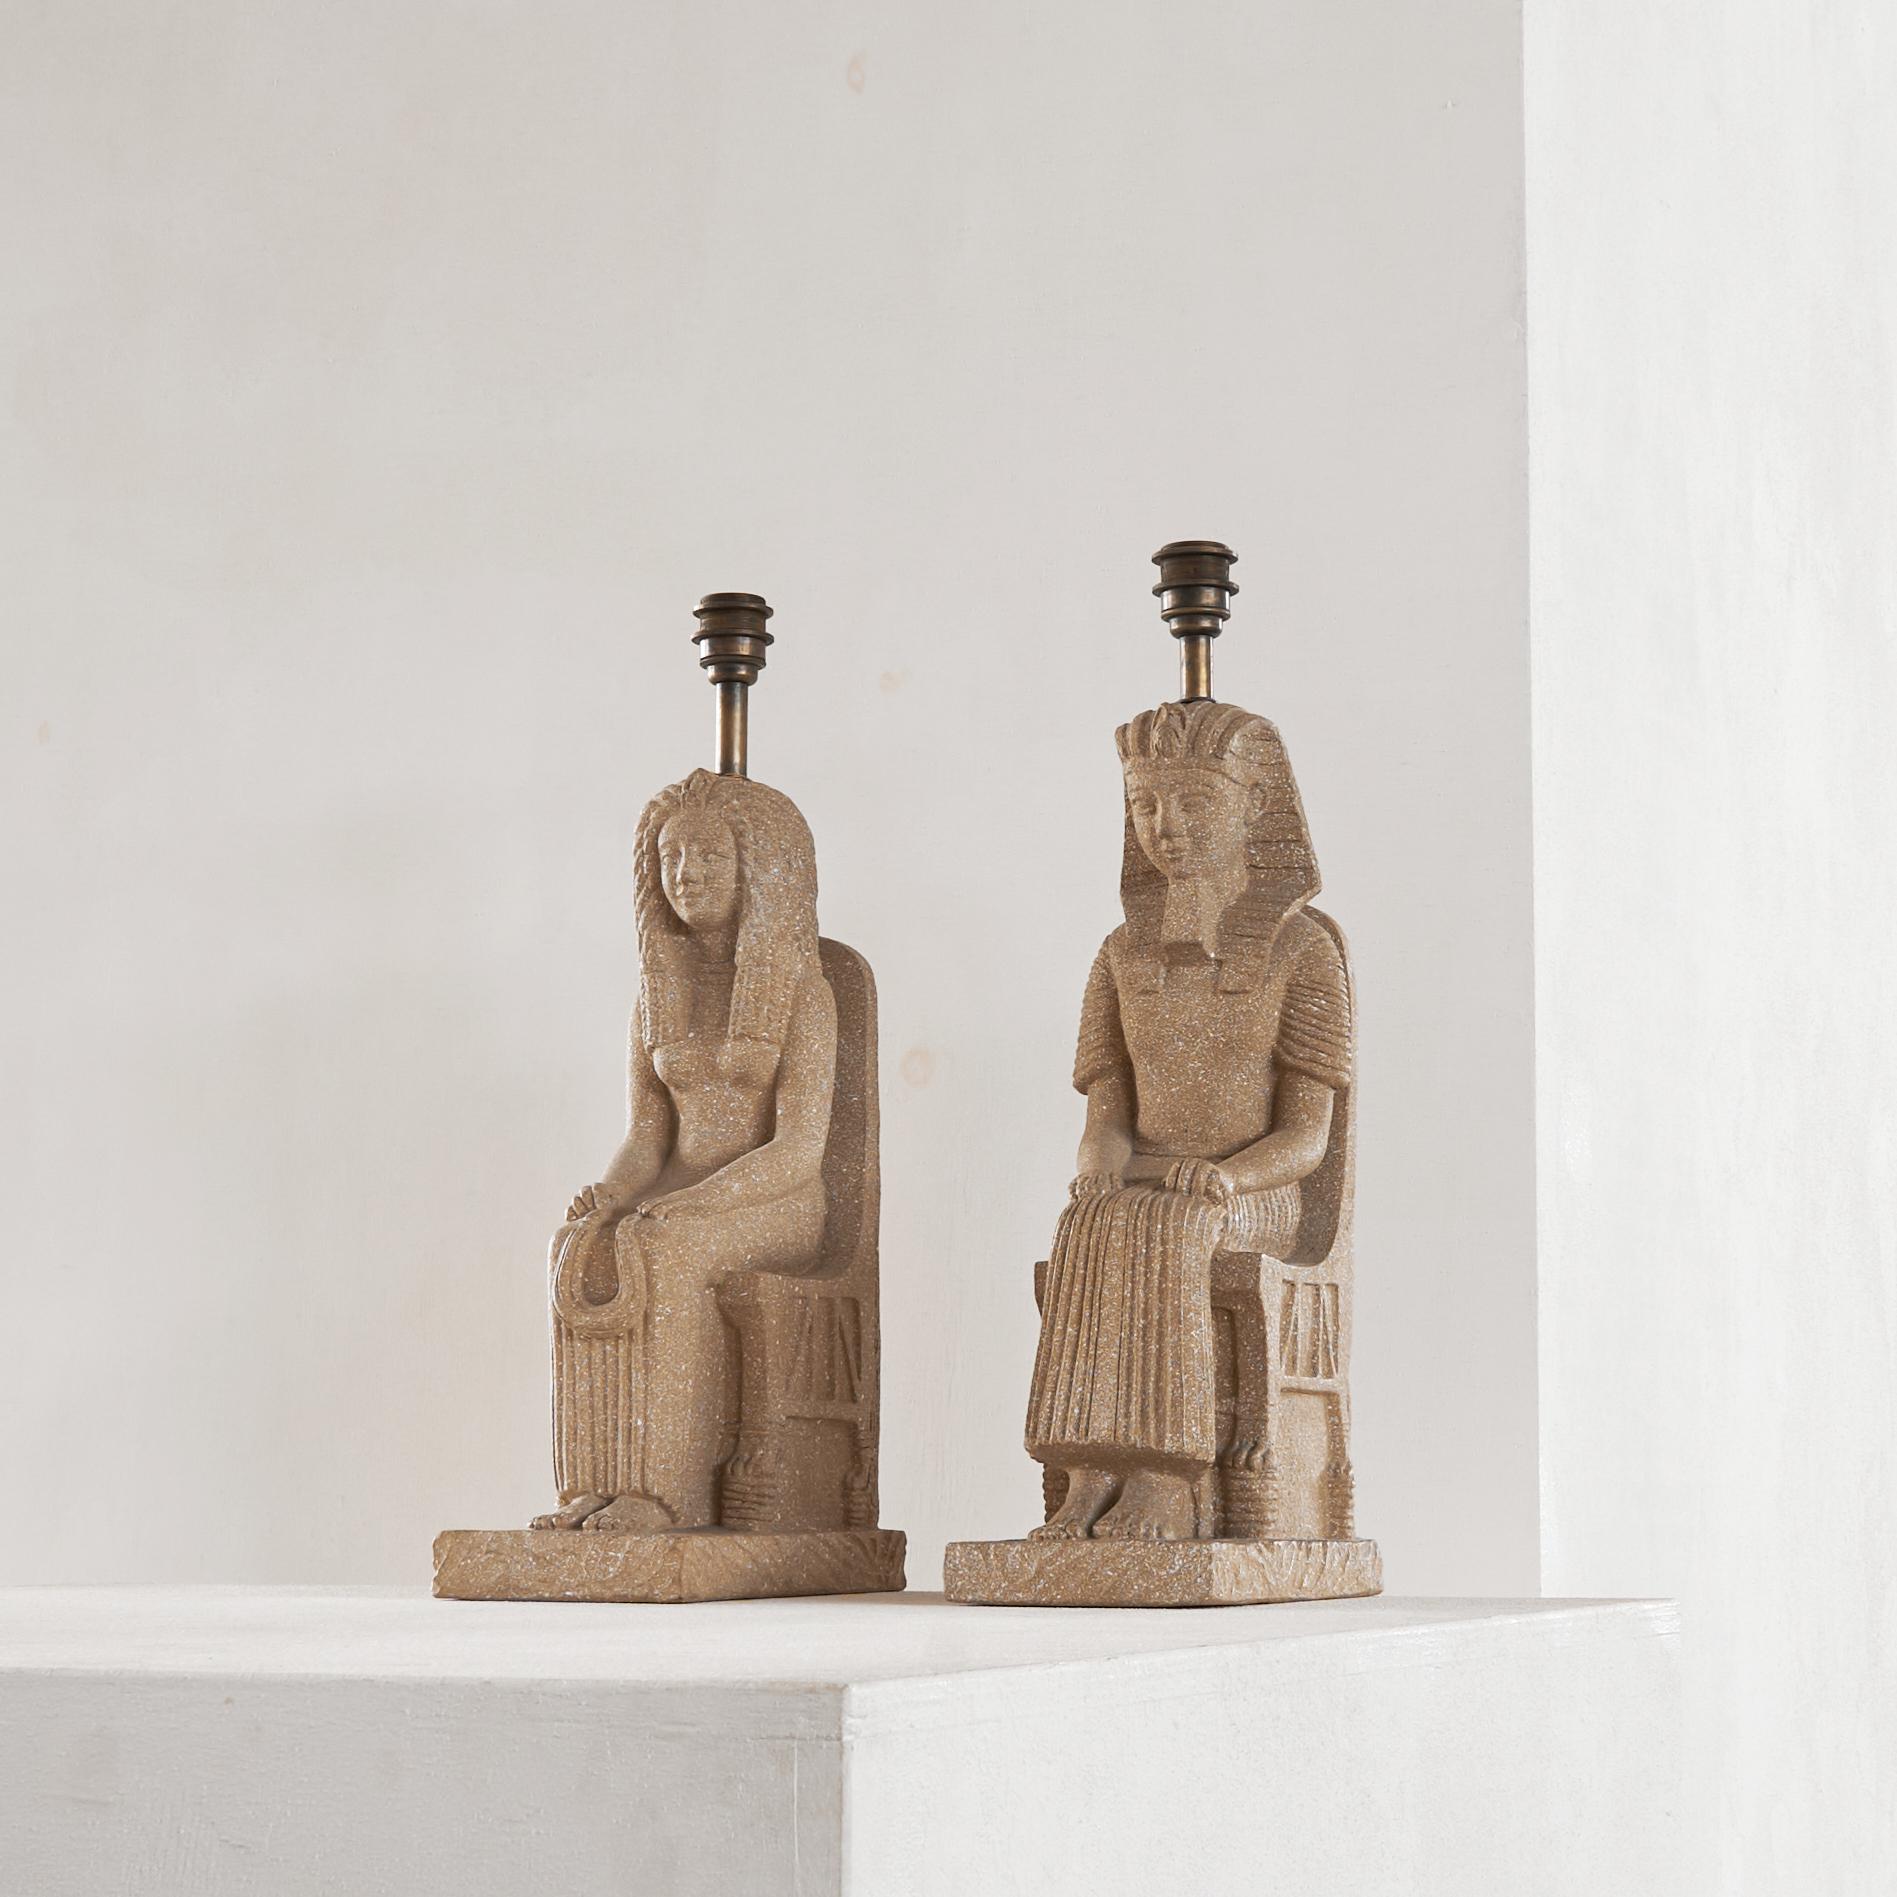 Zaccagnini Paire de lampes de table monumentales en céramique pharaonique, Florence, Italie, années 1970.

Il s'agit d'une magnifique et grande paire de lampes de table pharaon en céramique de la célèbre entreprise familiale Zaccagnini de Florence,